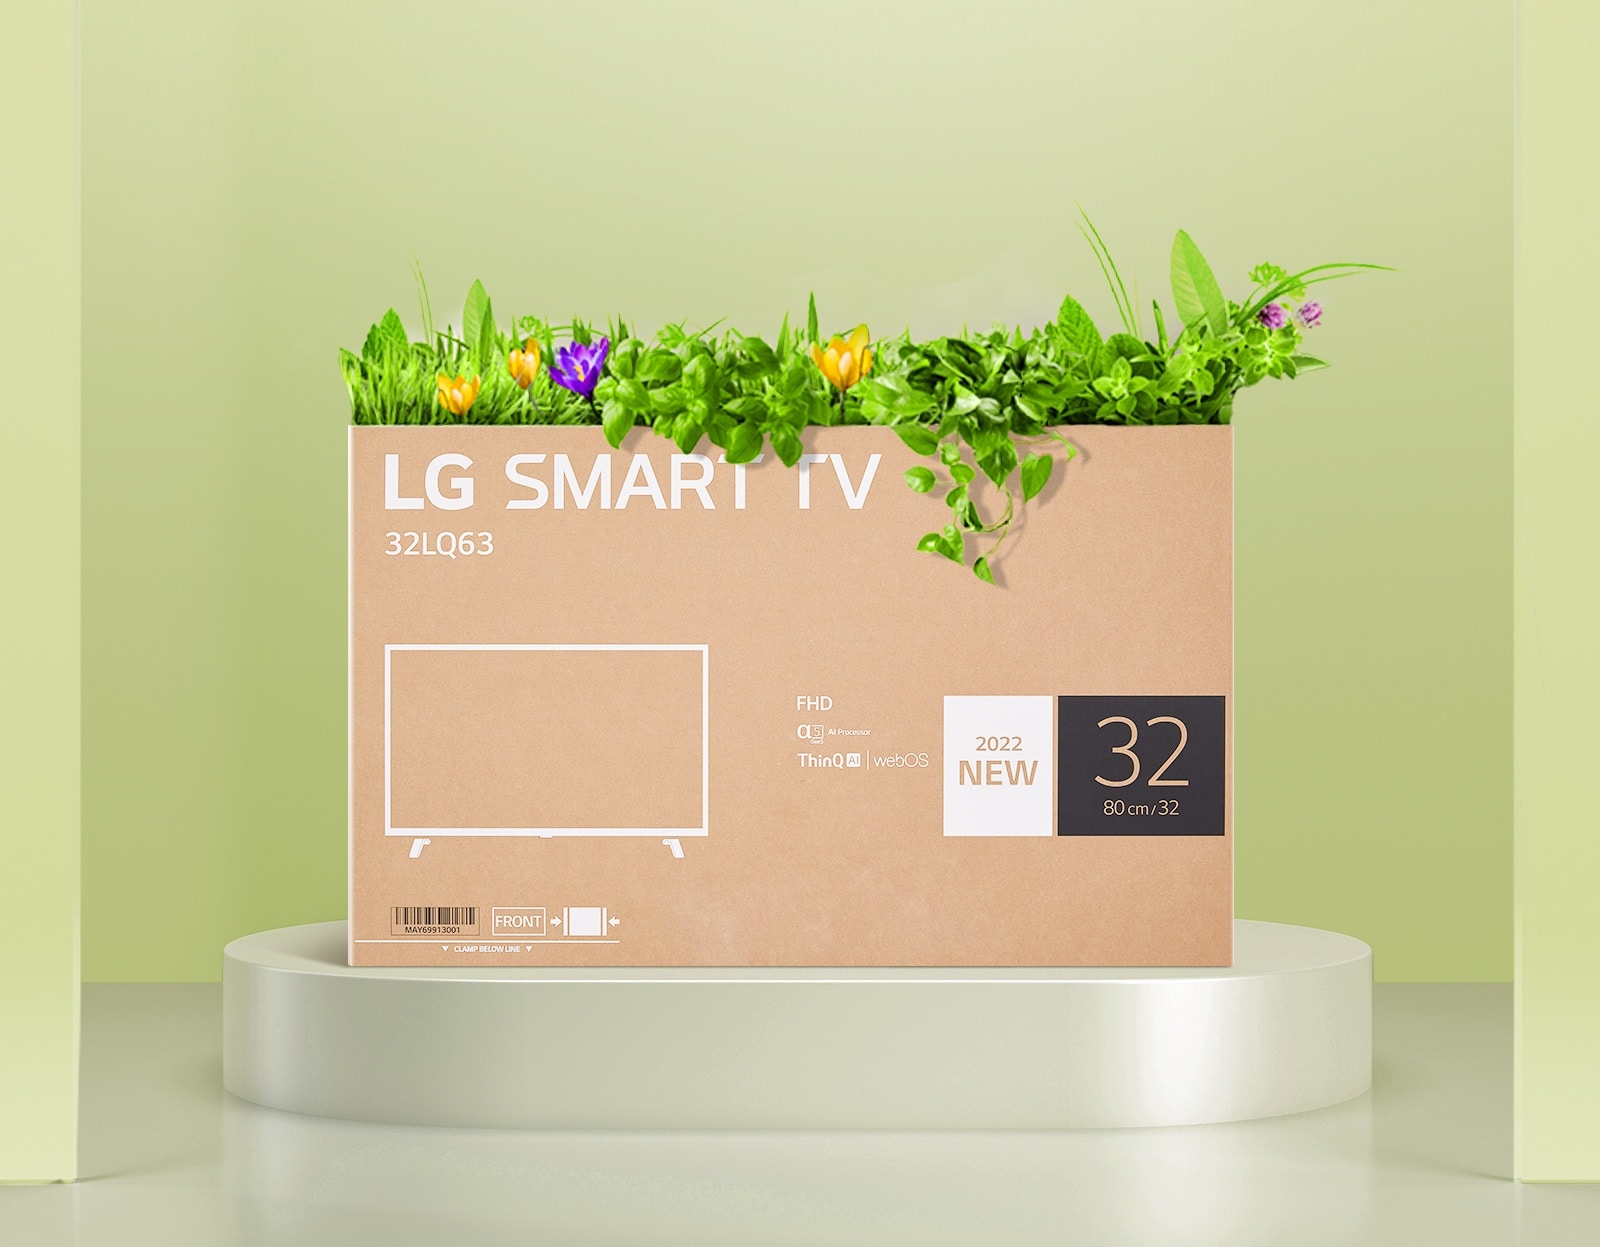 Kutija sa cvećem na ambalaži LG FHD televizora unapređenog kvaliteta.